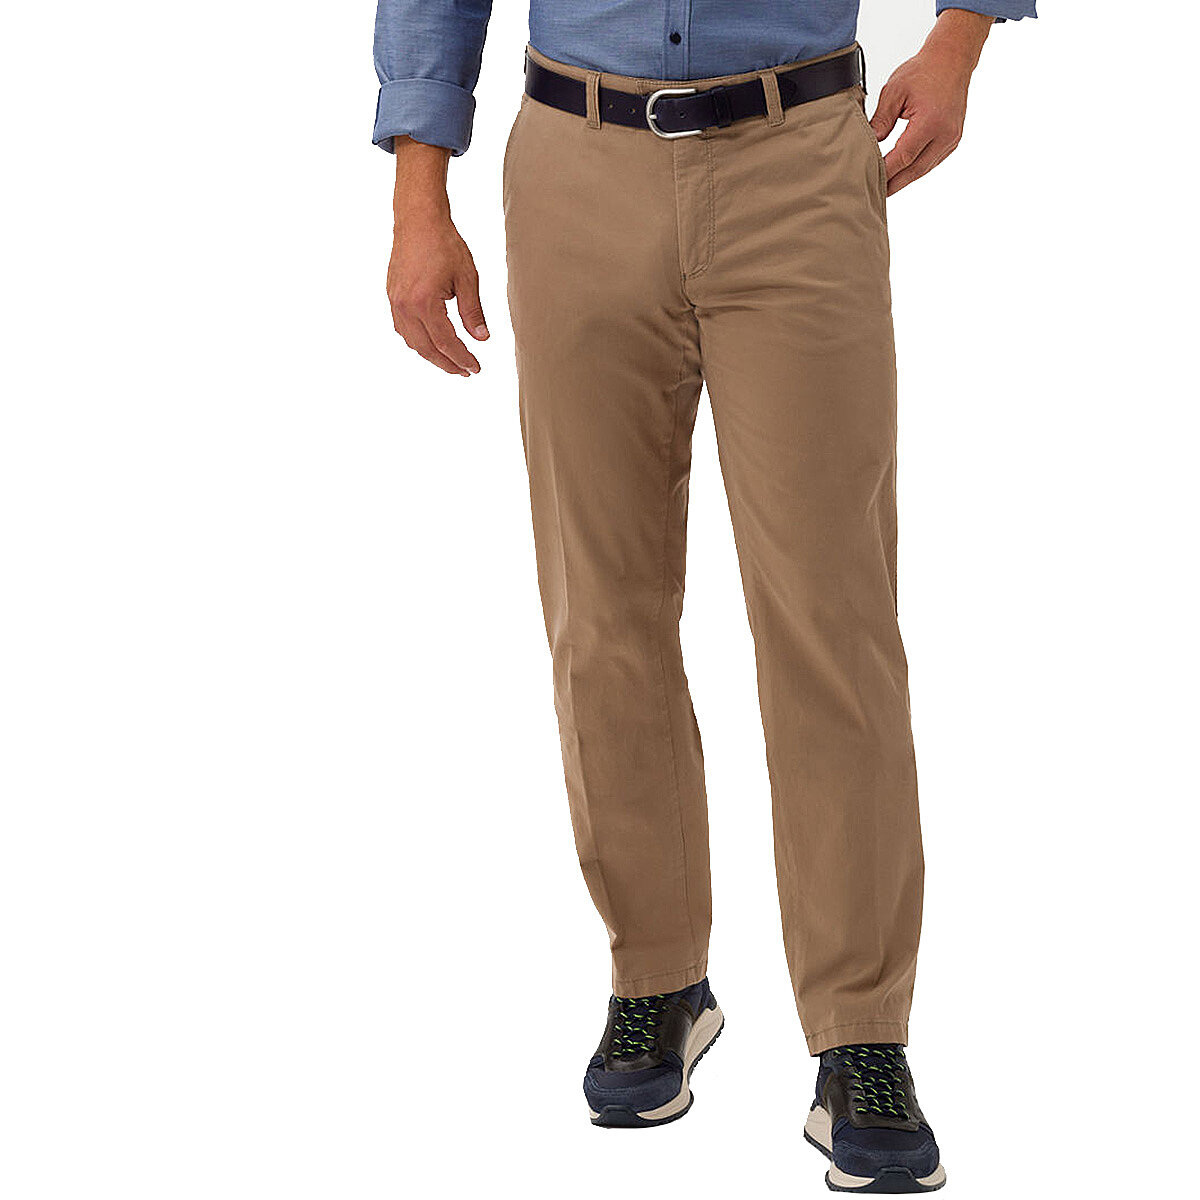 Eurex bei Brax | Flat-Front-Chino (Hose ohne Bundfalten) | Pima Cotton |  Kurzleib Modell | Beige | Größenspezialist Männermode